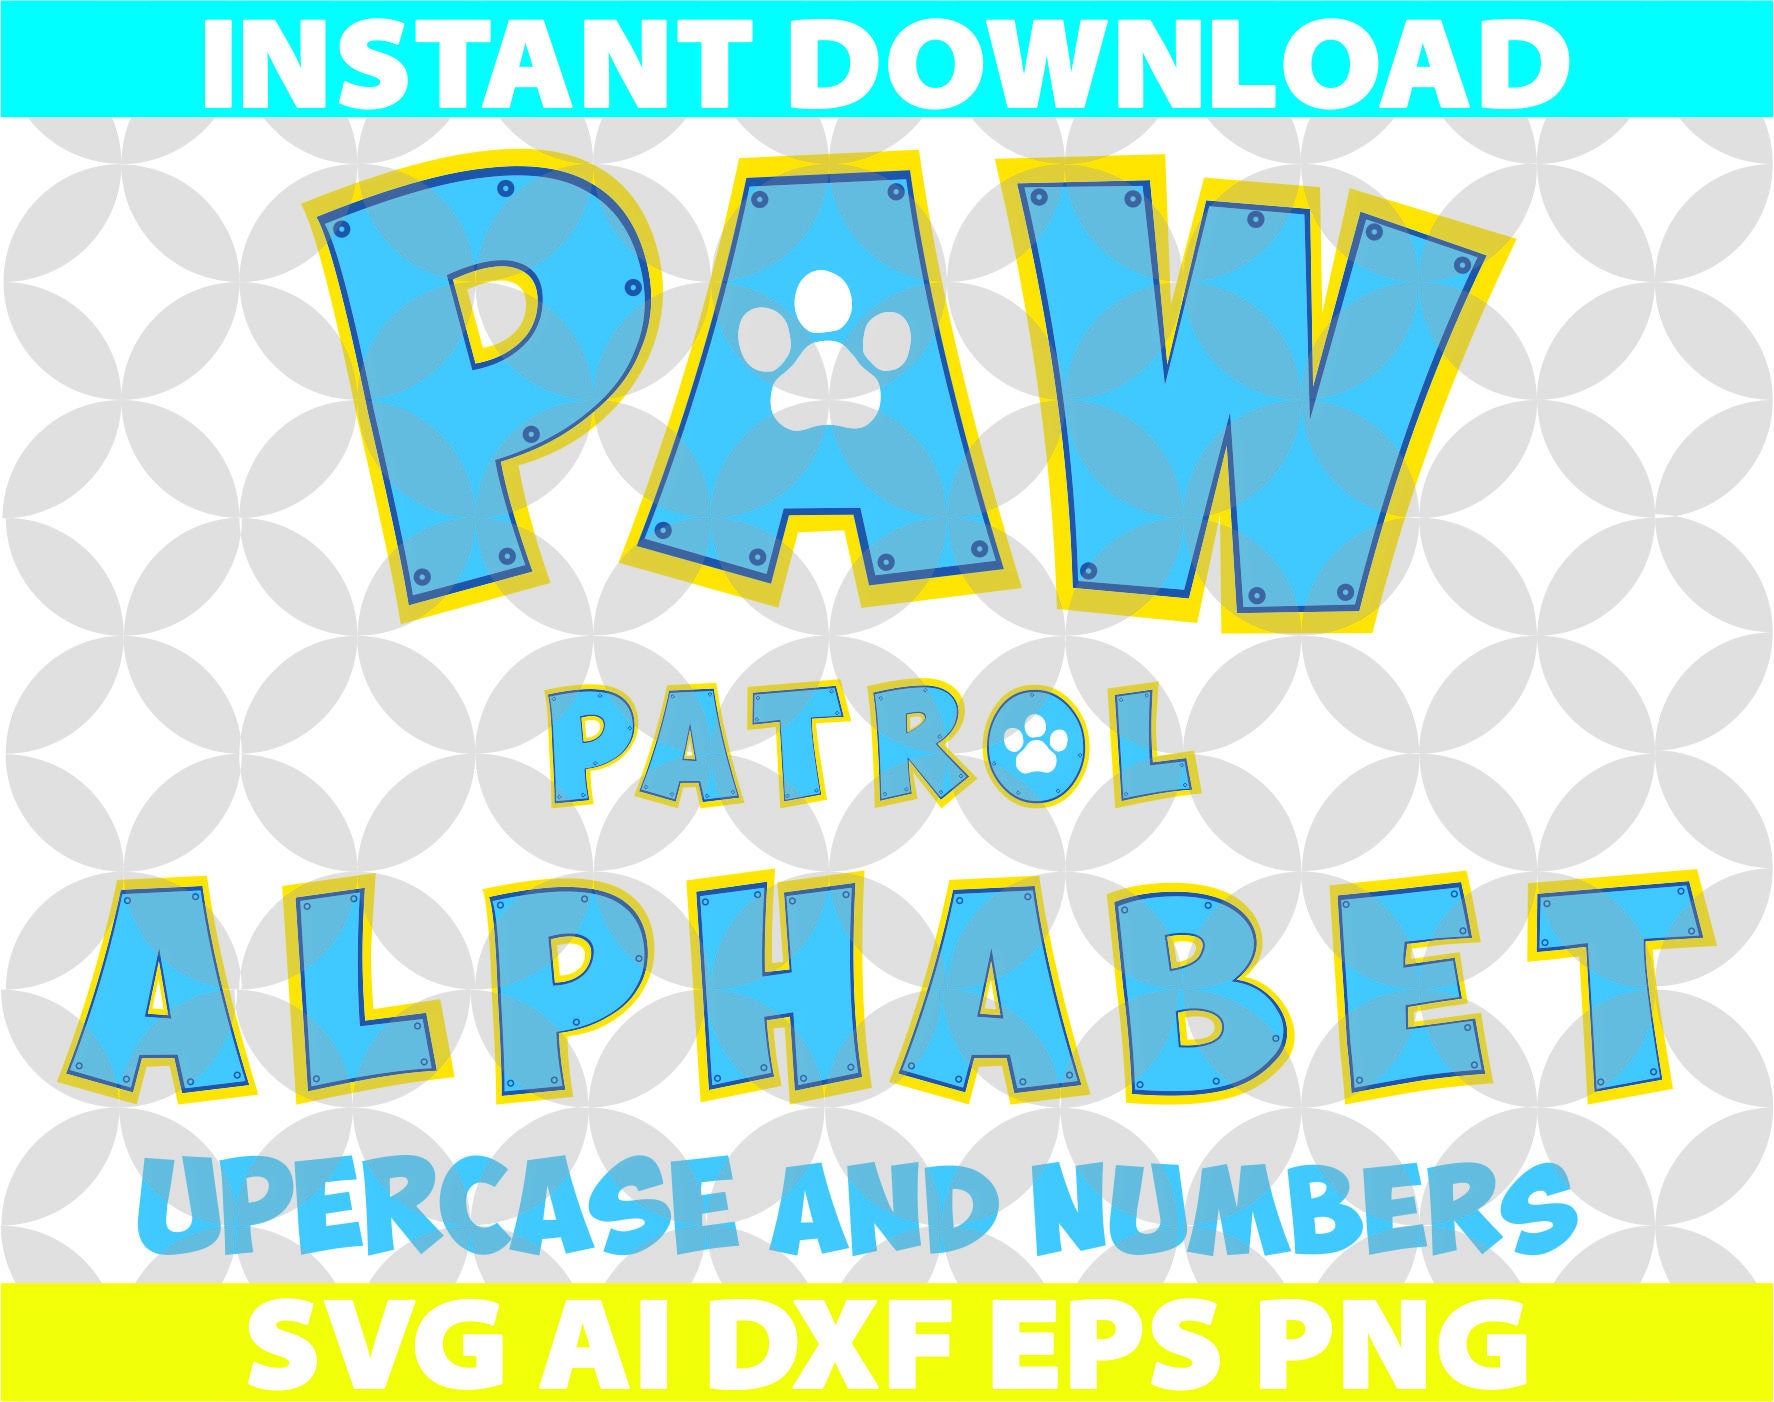 paw patrol font